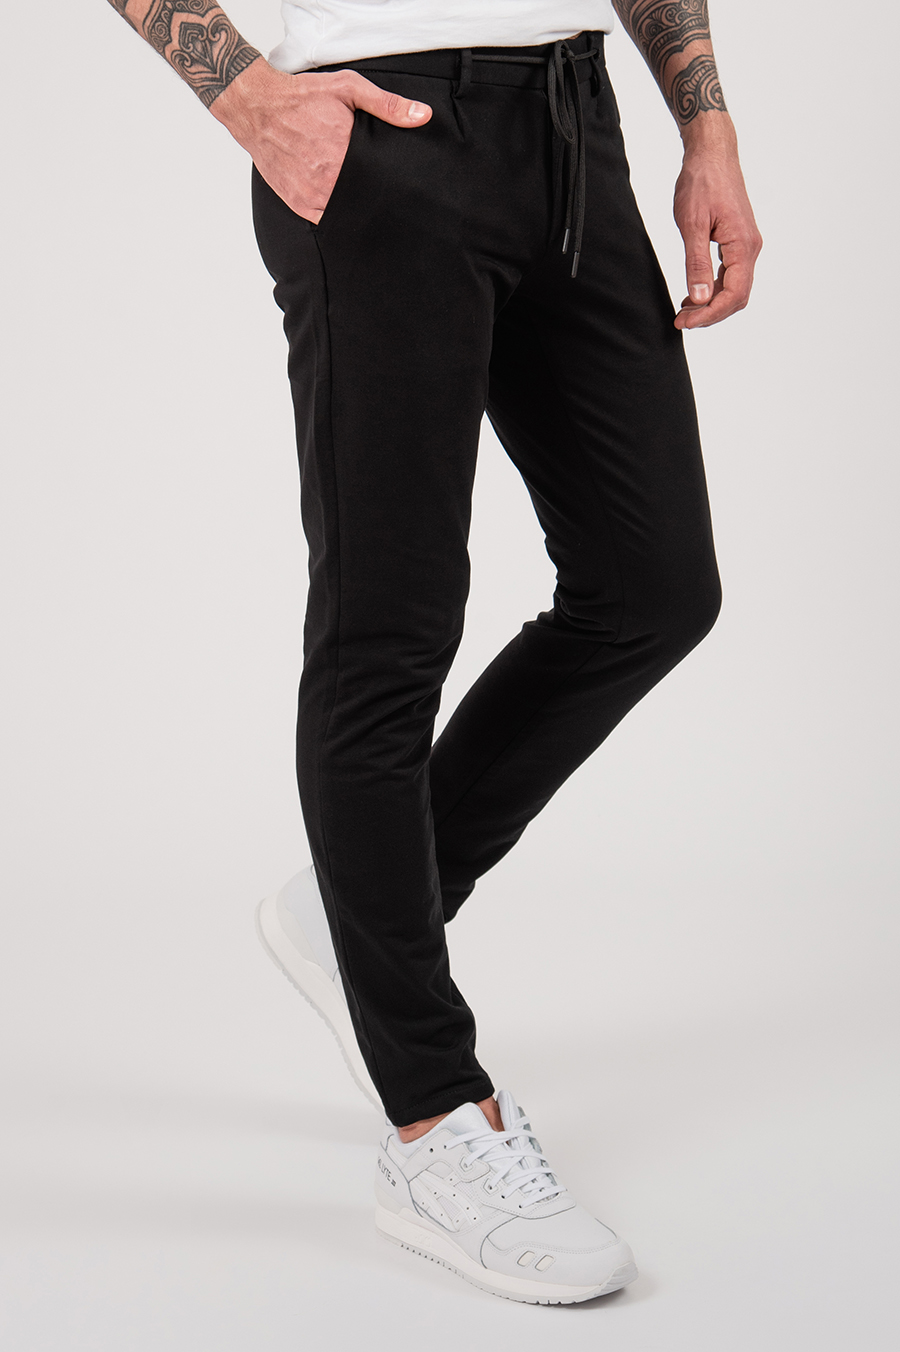 Мужские чёрные casual-брюки на шнурке. Арт.:6-2150-2 – купить в магазинемужской одежды Smartcasuals